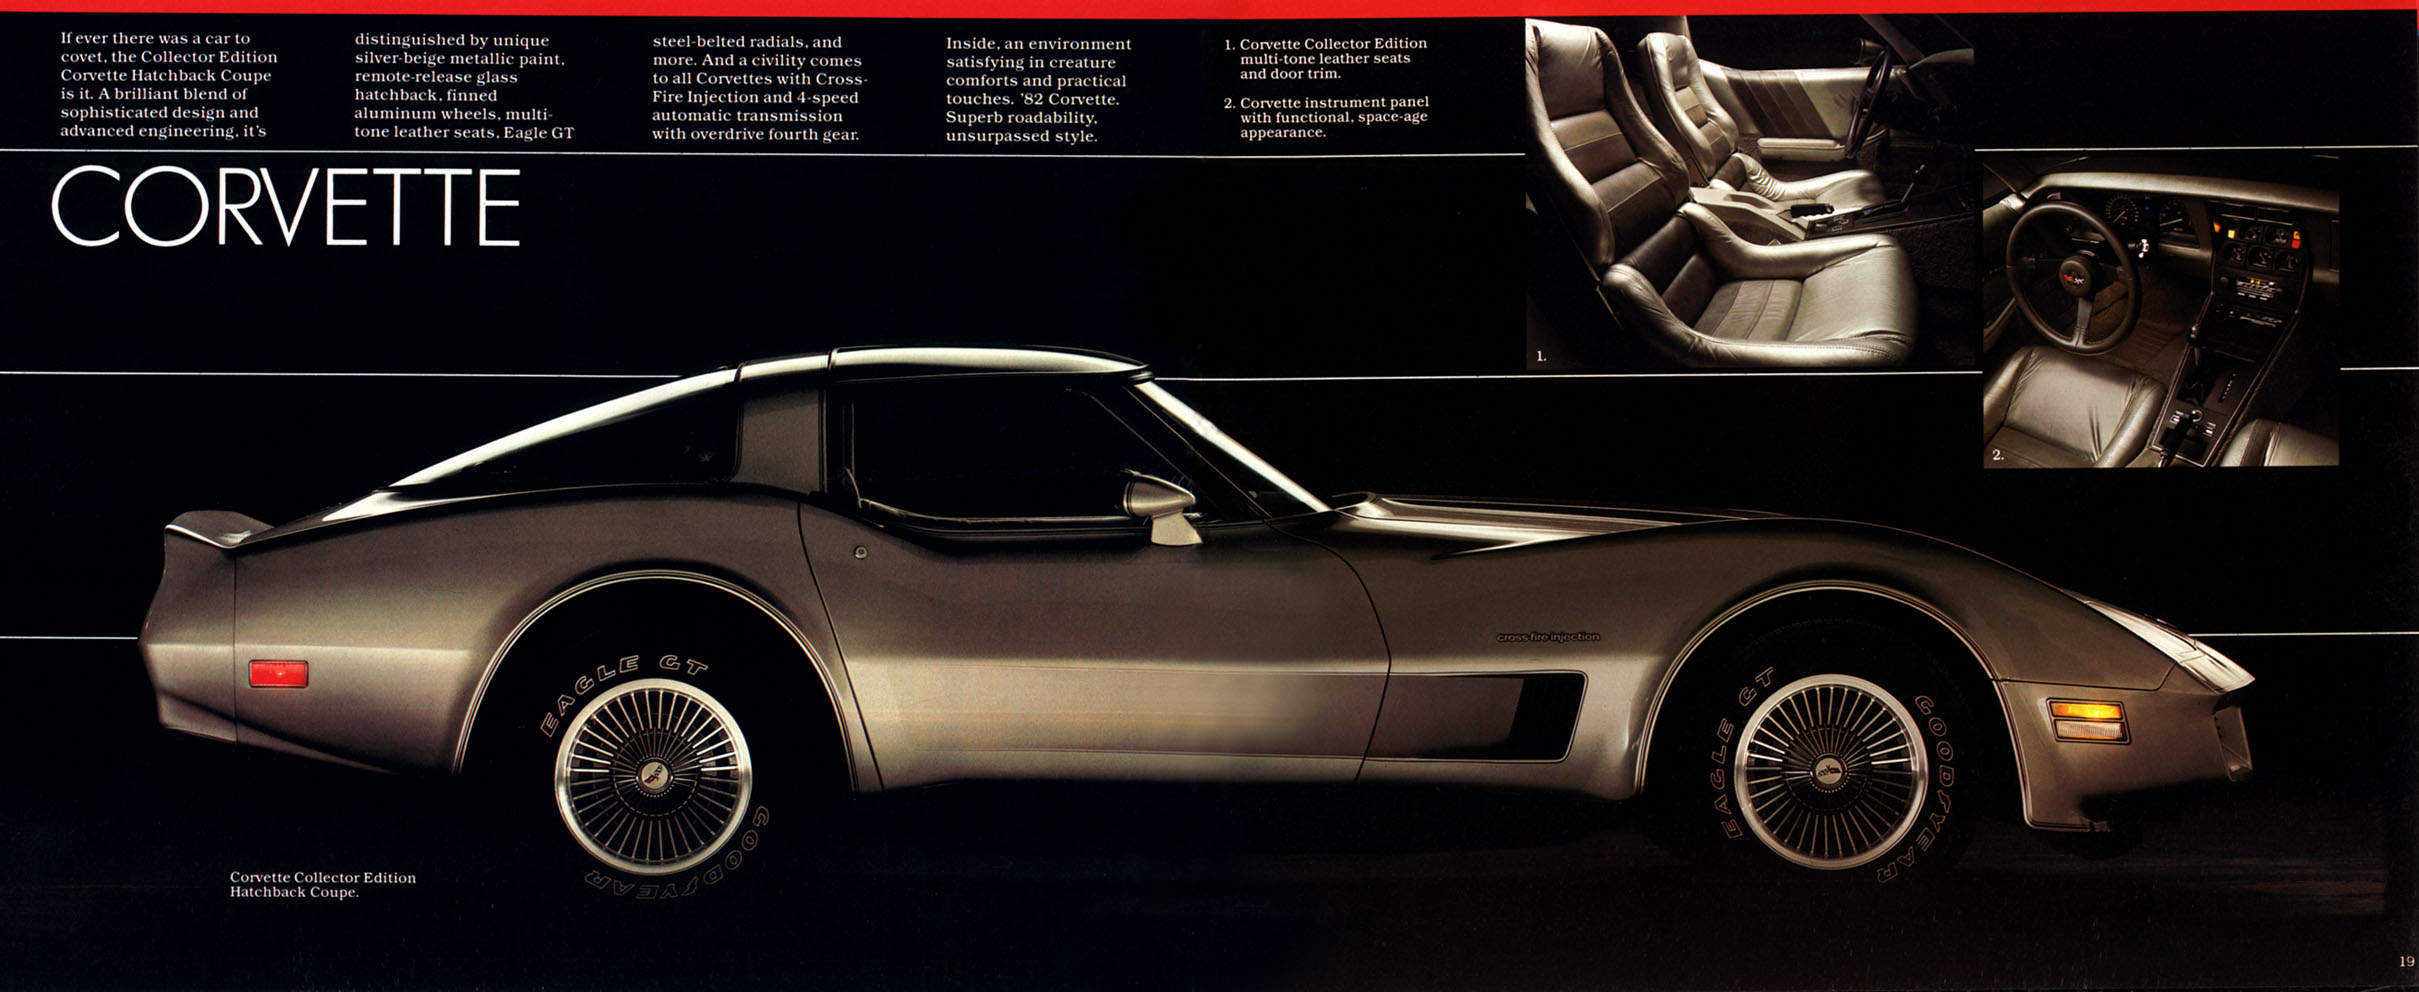 1983_Chevrolet_Full_Line-18-19